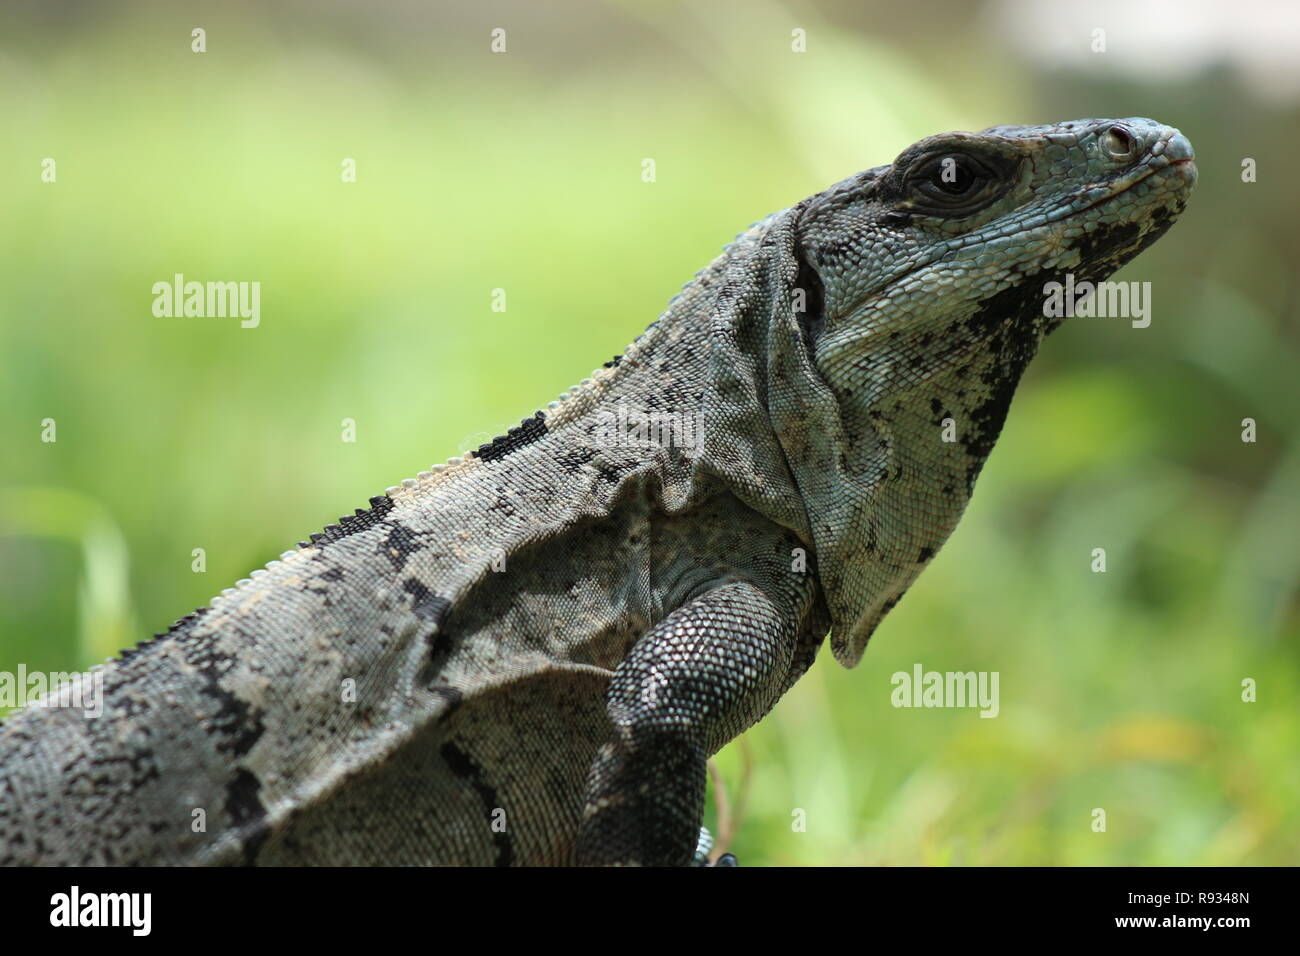 Nahaufnahme eines ruhenden Echse gegen ein weiches - Fokus grüner Hintergrund, Chichen Itza, Mexiko, Mittelamerika Stockfoto